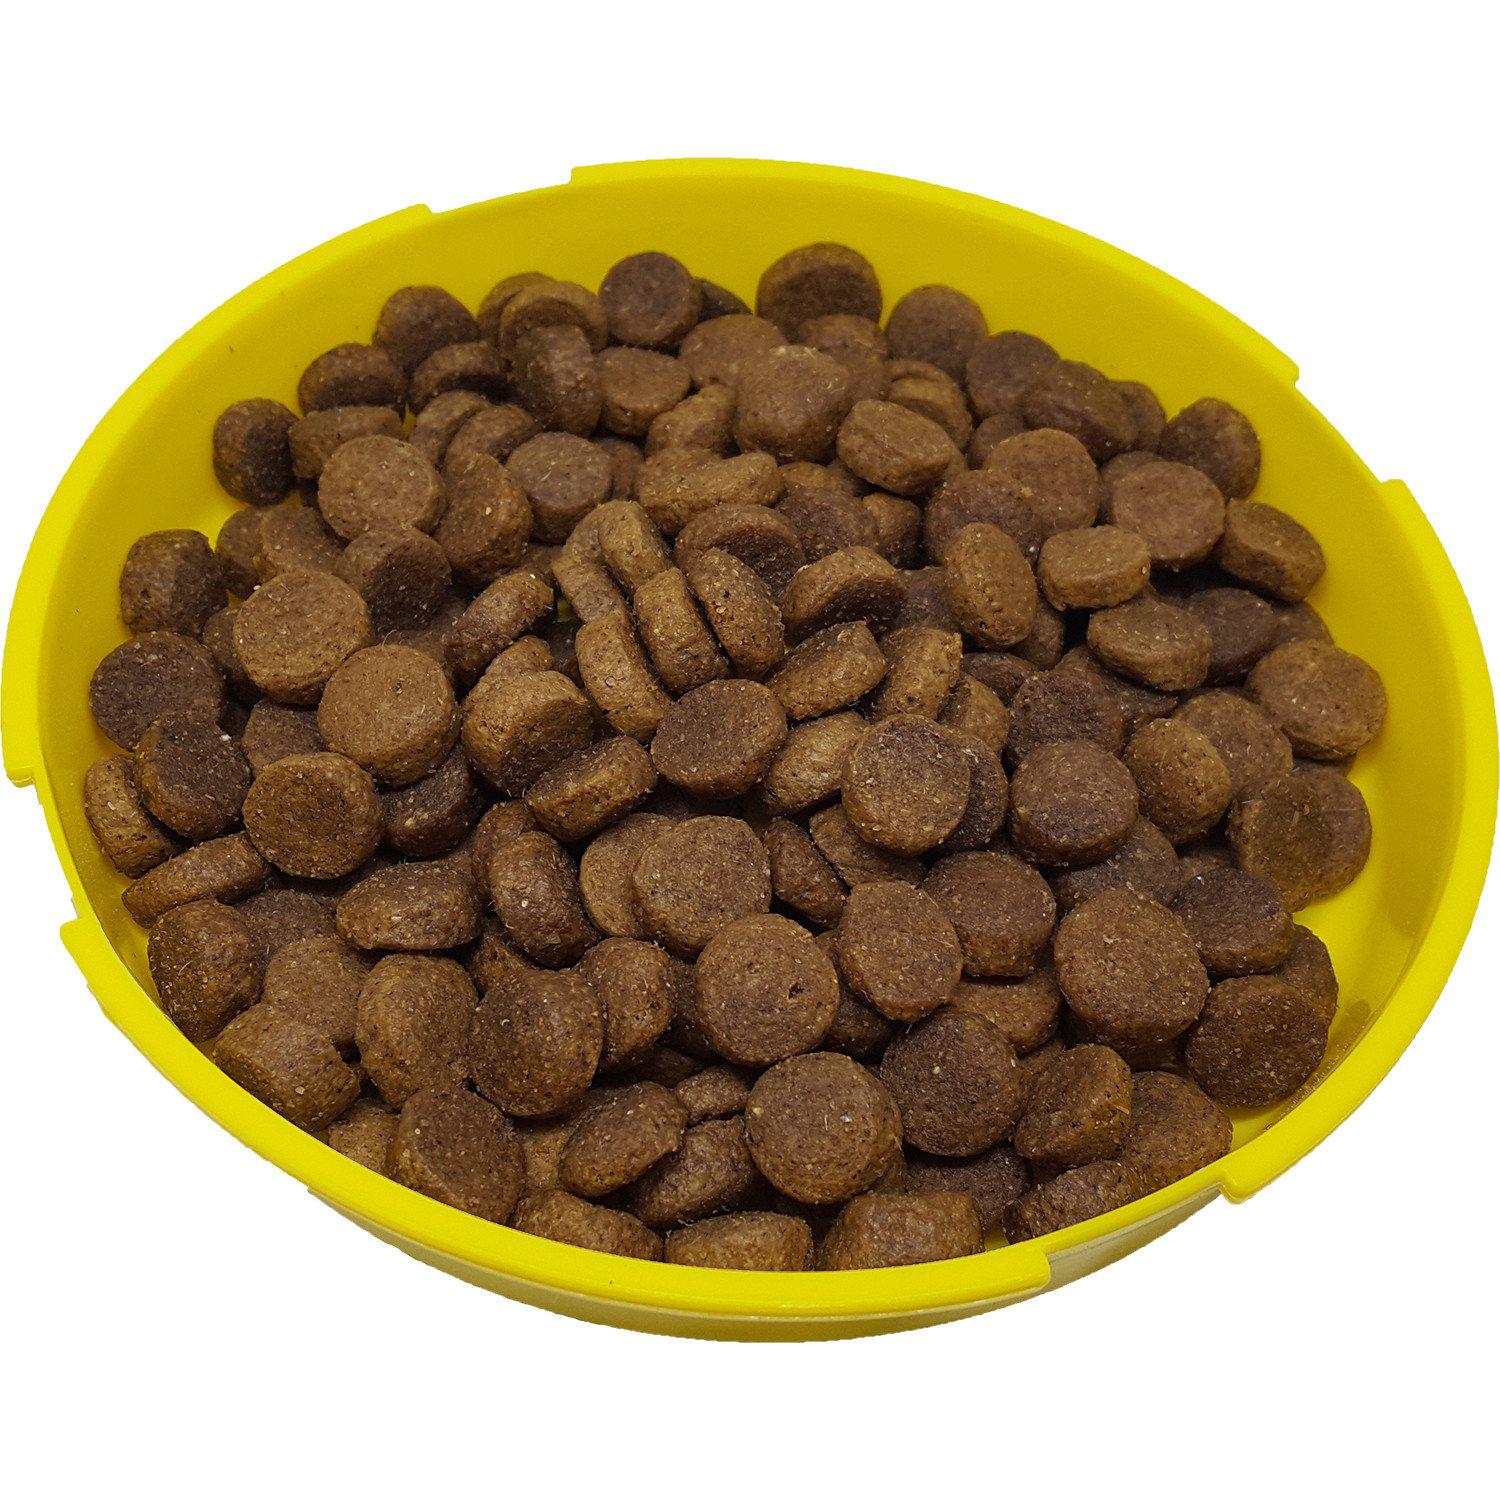 HI-PRO FEEDS® ProForm Kennel Blend (All Stages) Dog Food 18 KG - Critter Country Supply Ltd.